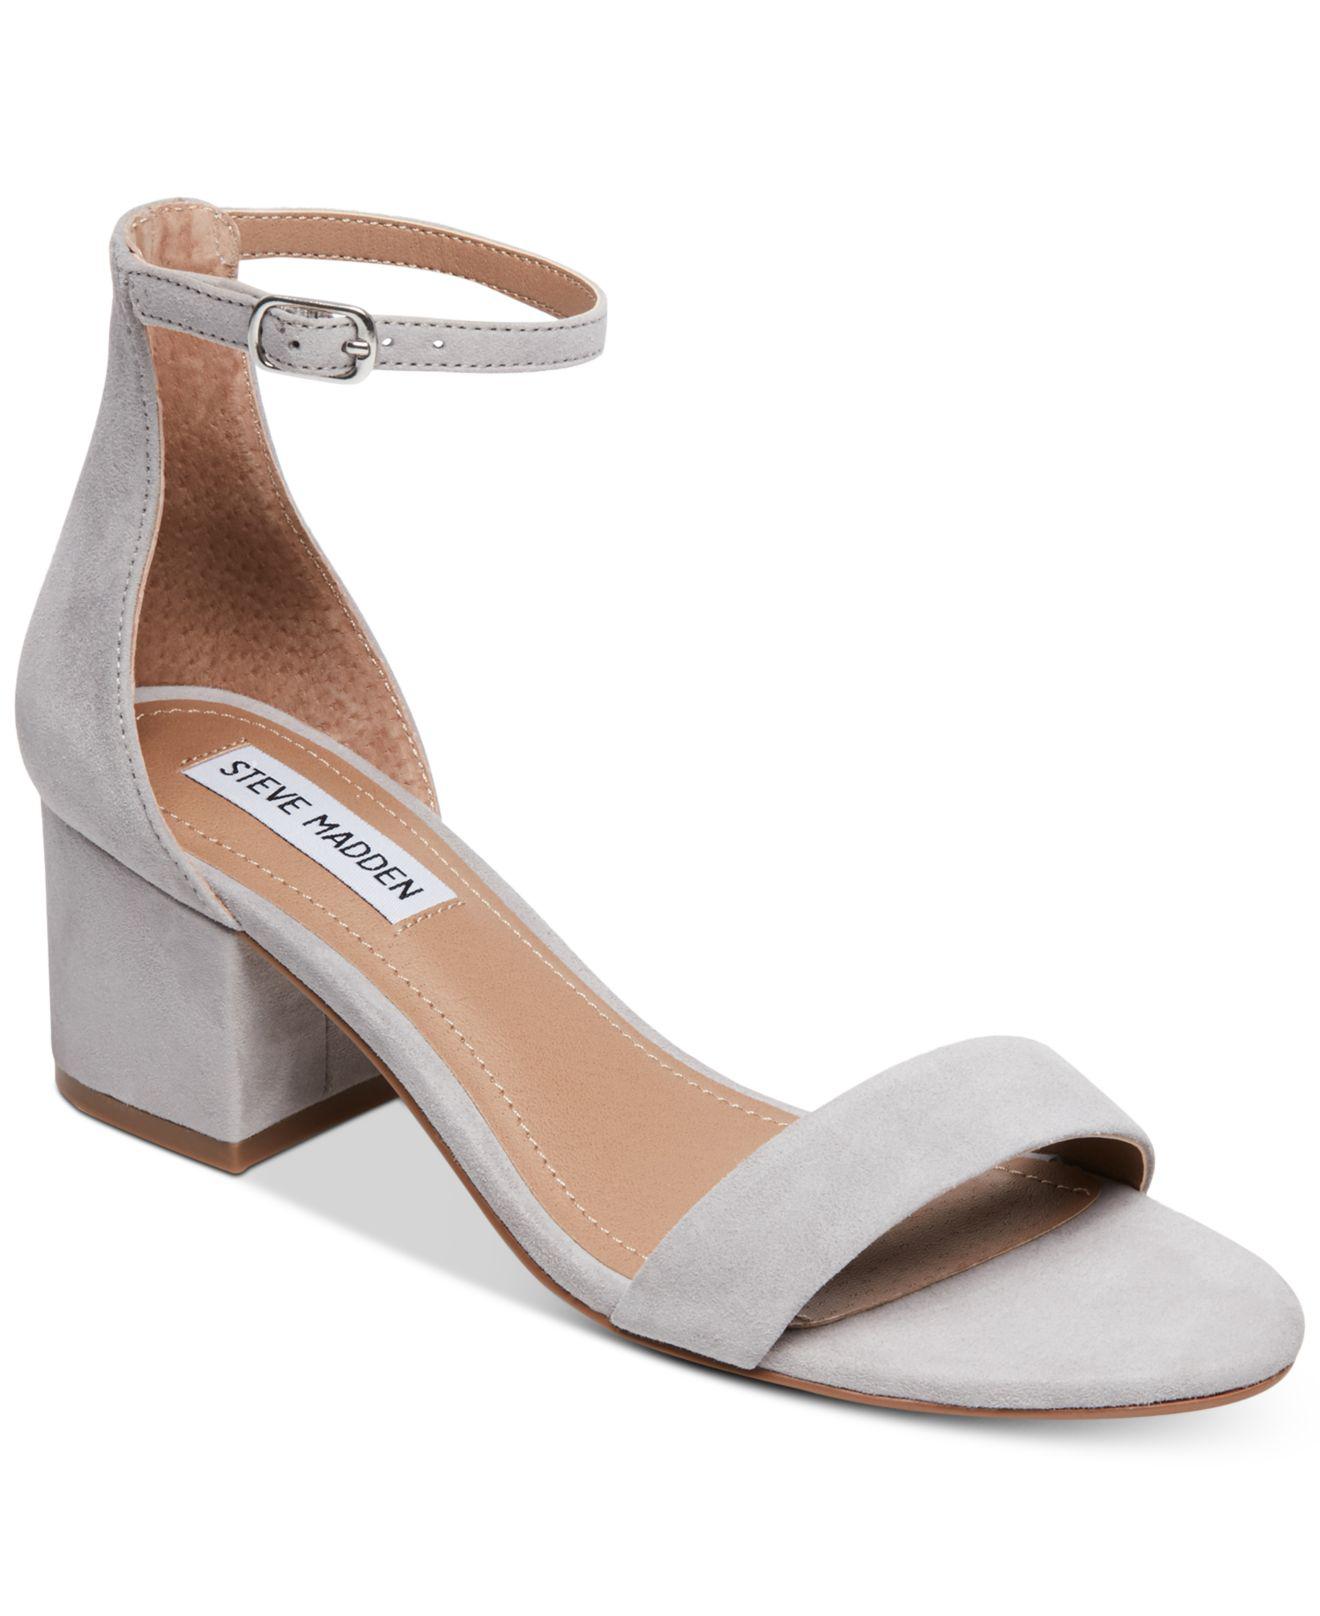 Steve Madden Suede Irenee Two-piece Block-heel Sandals in Grey Suede (Gray)  - Lyst